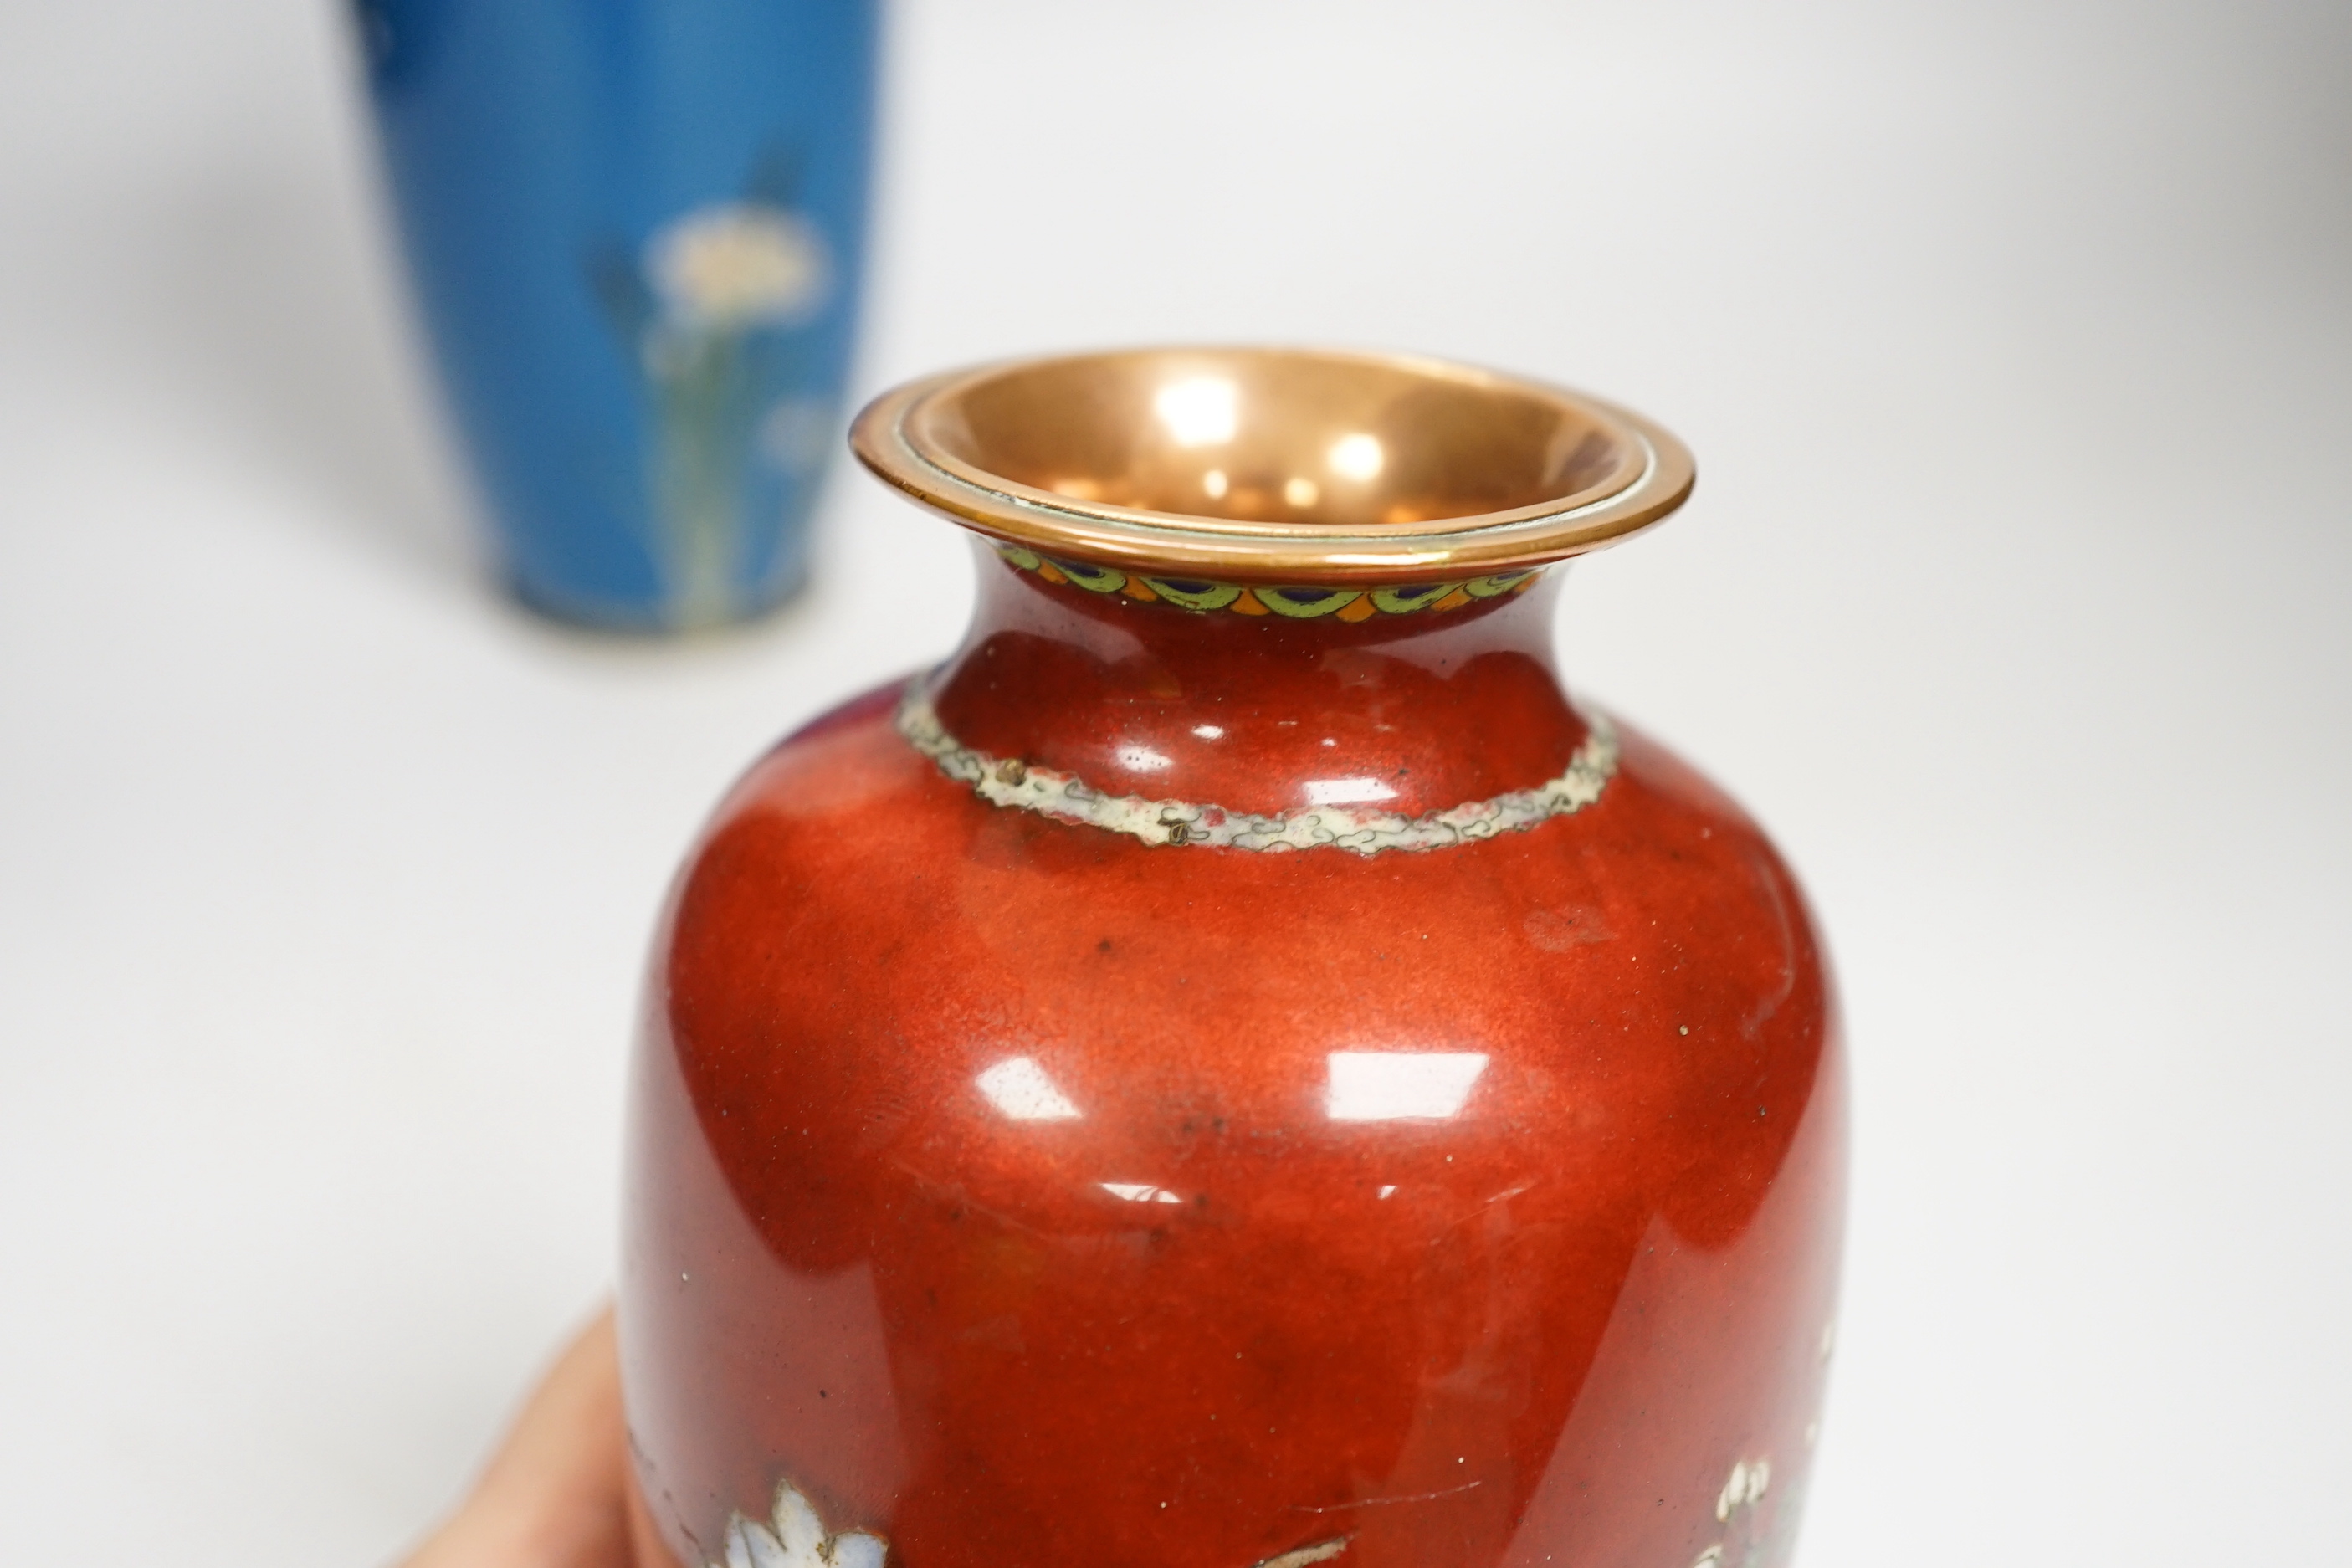 Four Japanese cloisonne enamel vases, tallest 24.5cm